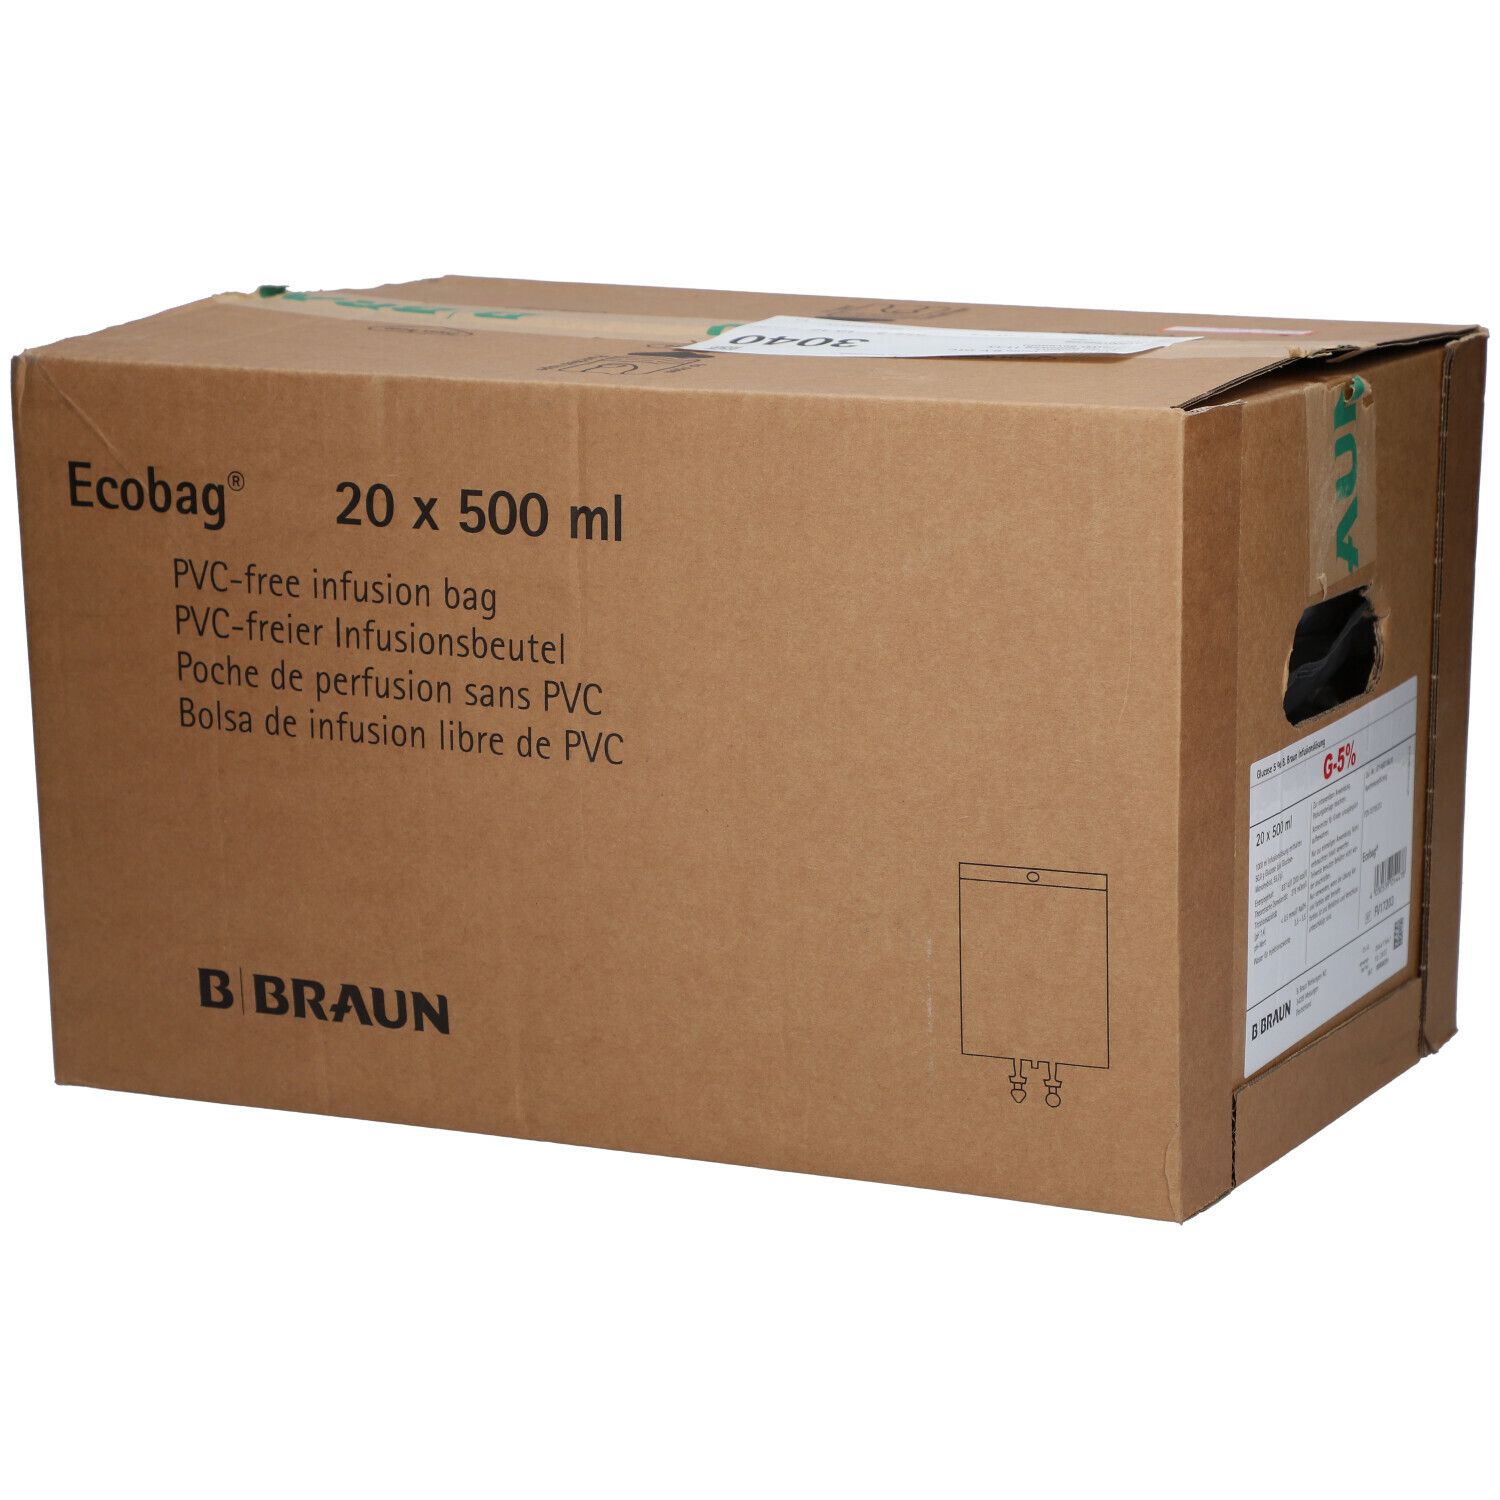 Glucose 5% B.Braun Ecobag